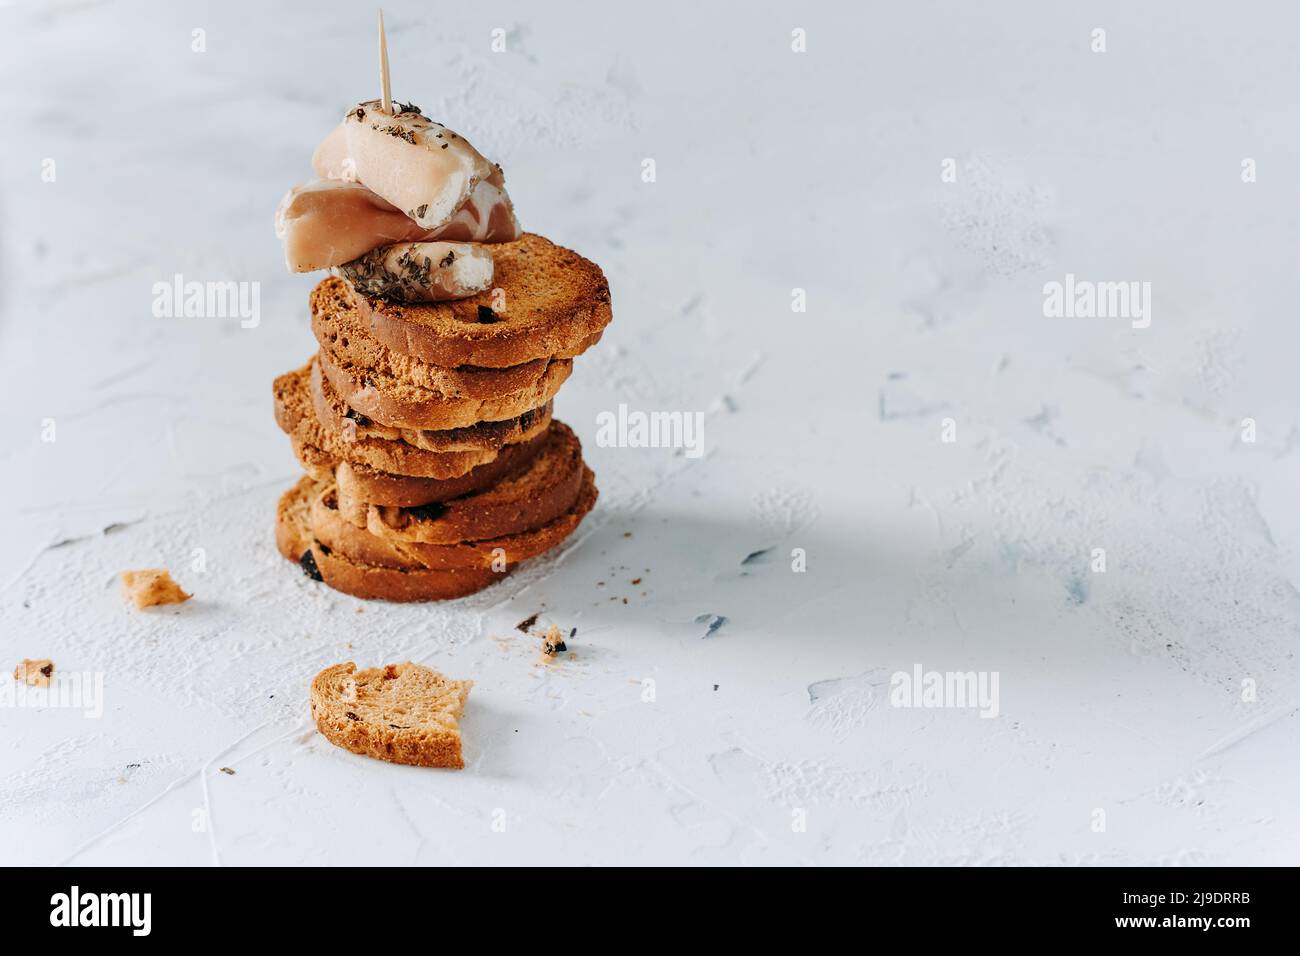 Hintergrund der Speisen. Ein Turm aus knusprigen Toast mit Oliven und Schinken- und Frischkäse-Häppchen auf einem texturierten, eleganten weißen Hintergrund. Knuspriger Toast für mehr Farbe Stockfoto